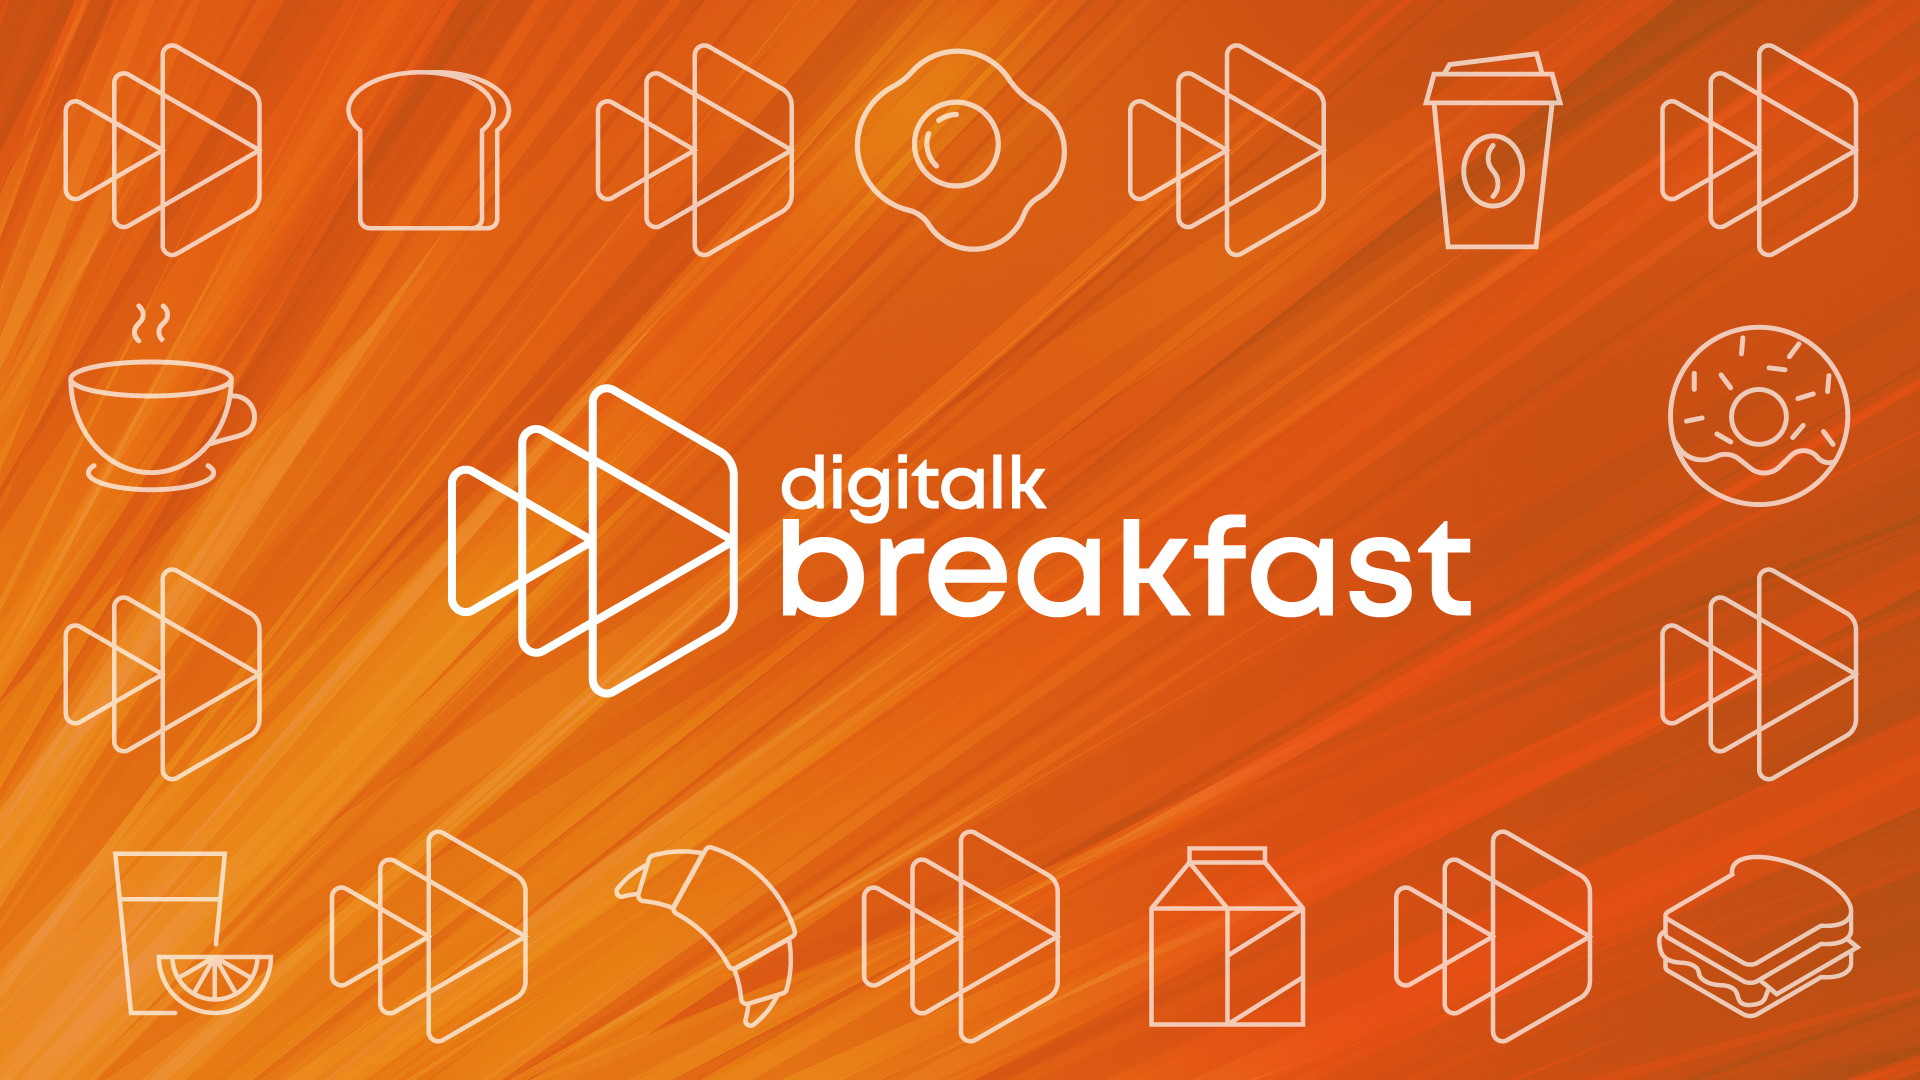 Digitalk breakfast